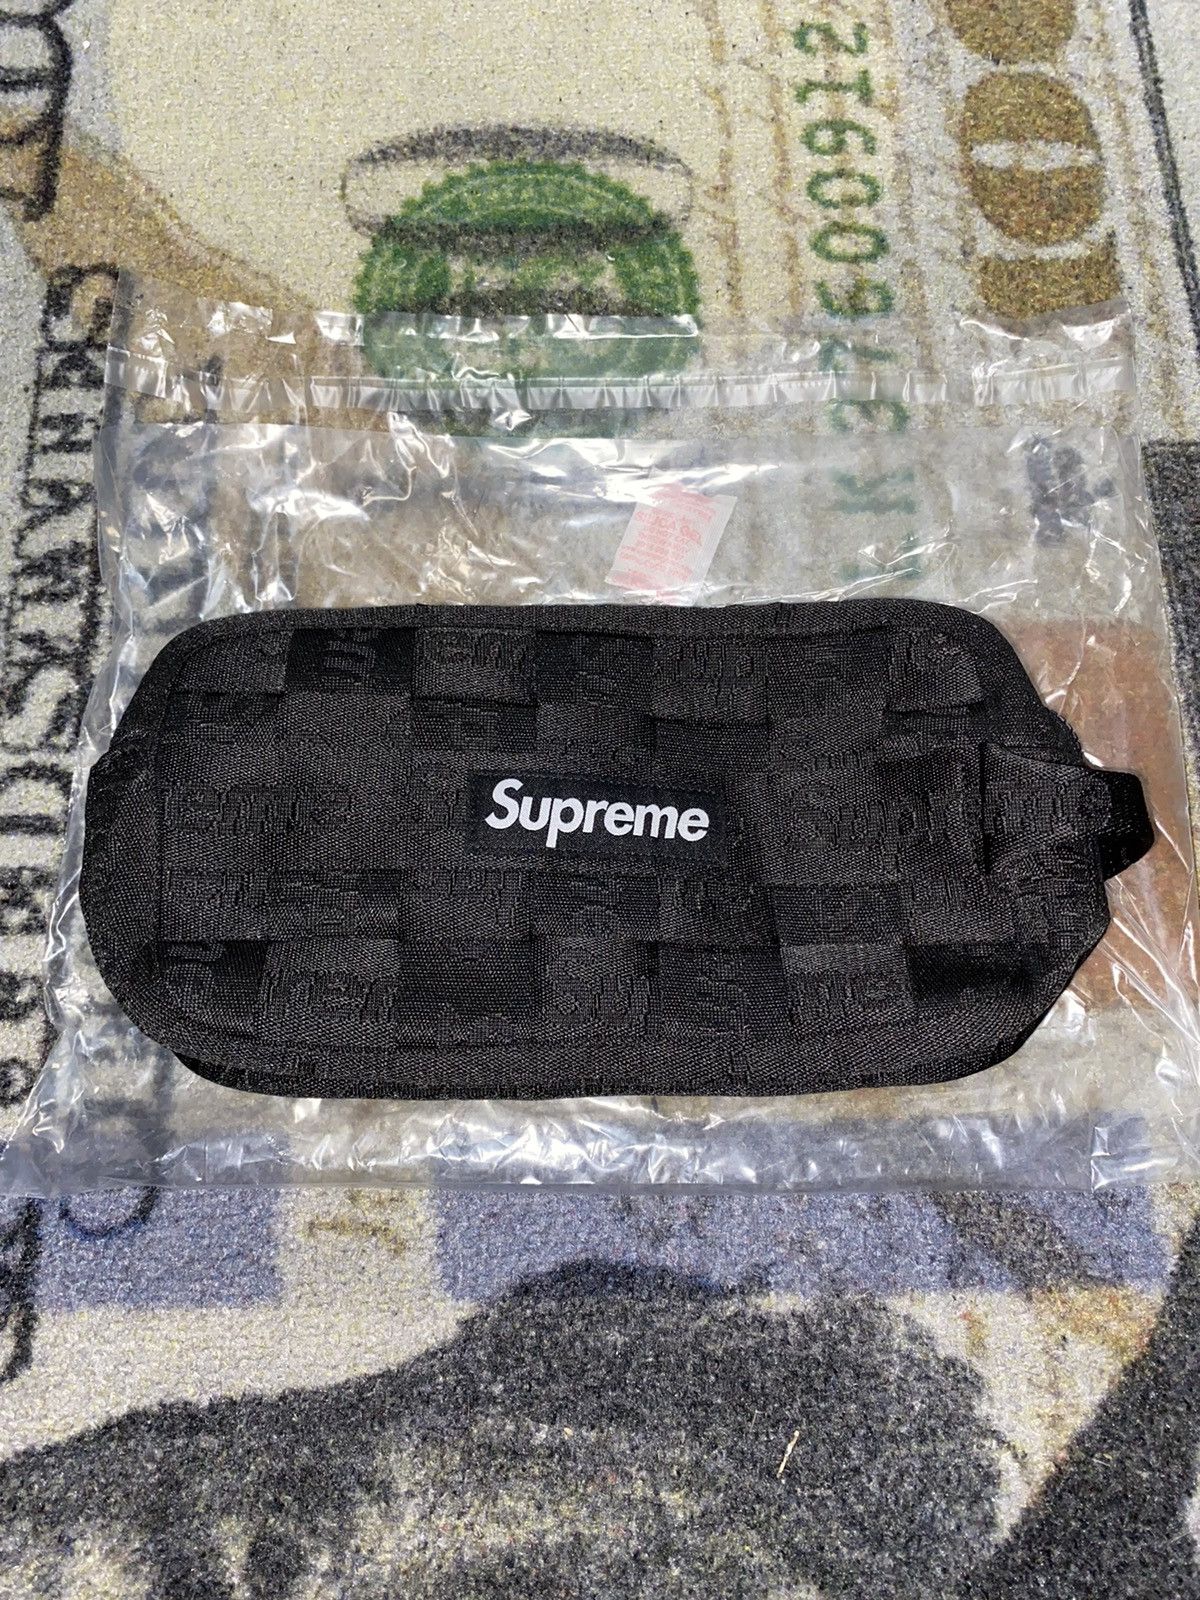 Supreme Supreme Woven Utility Bag | Grailed